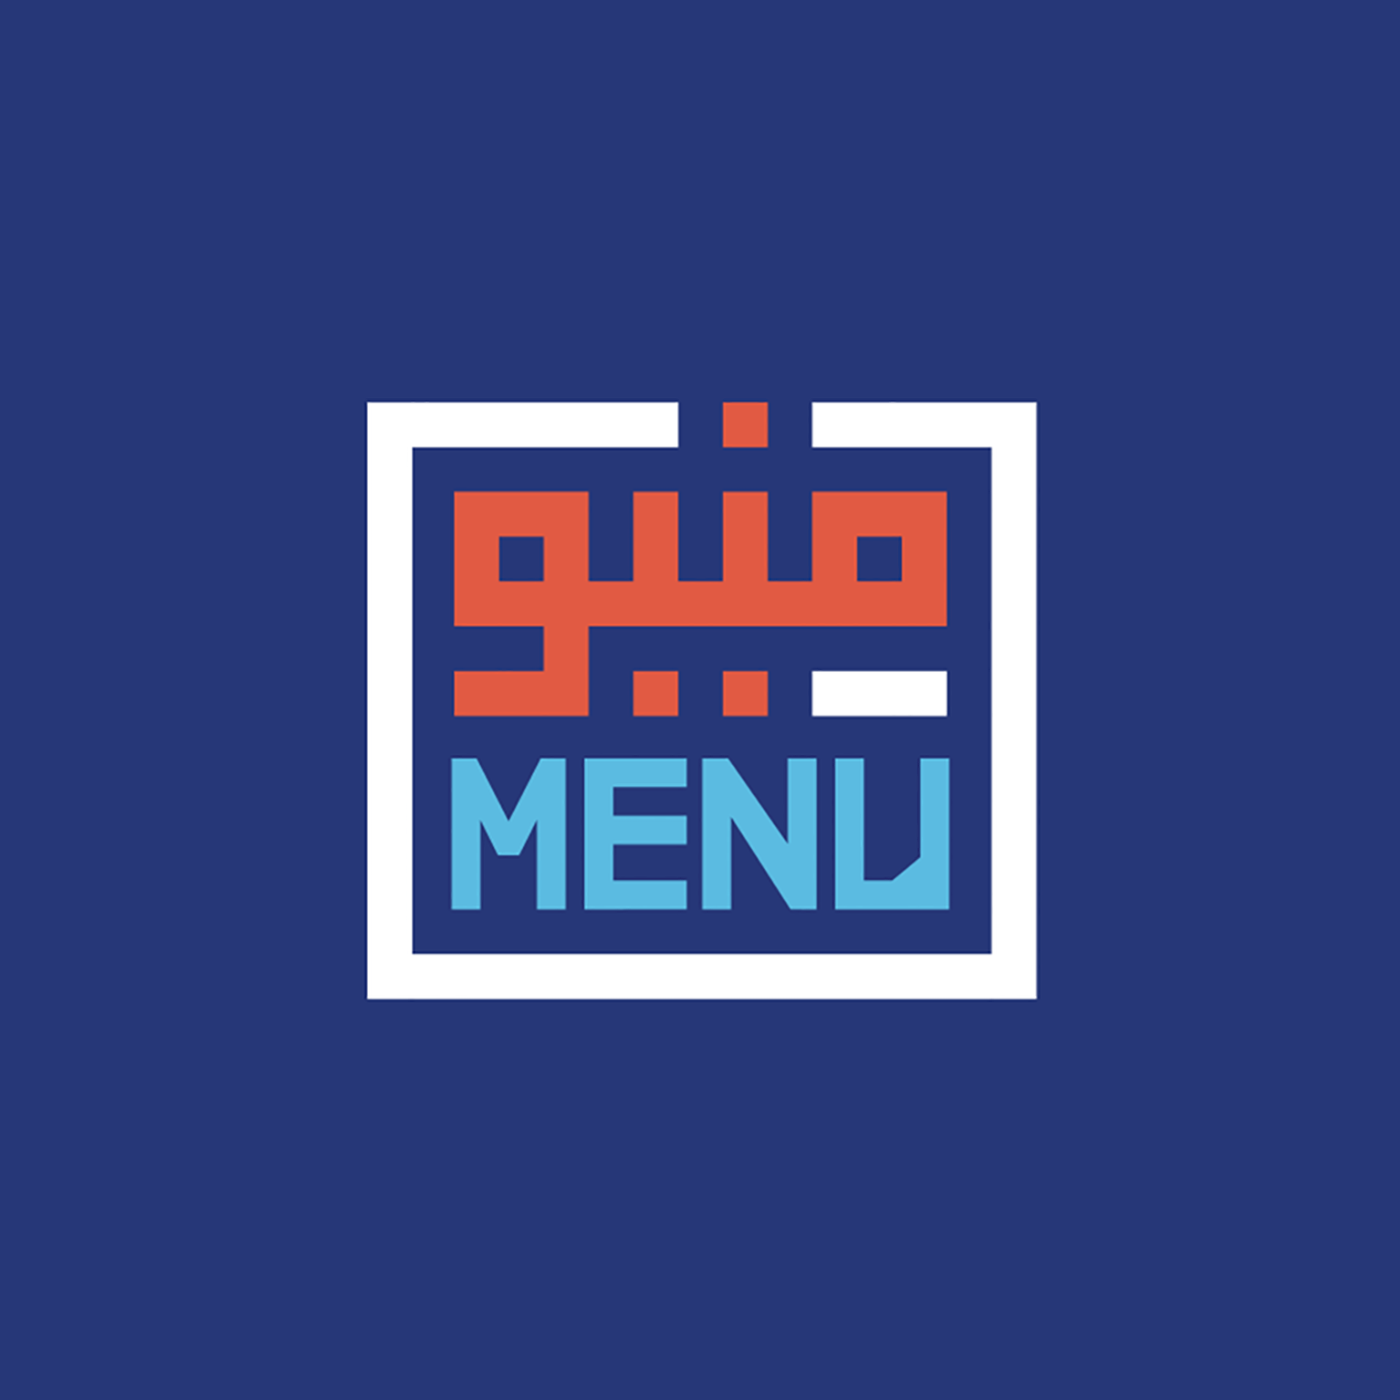 منيو بودكاست ح 2| كيف يؤثر توسُع مطاعم البيك وشاورمر خارج السعودية، وما هي التحديات في ذلك؟